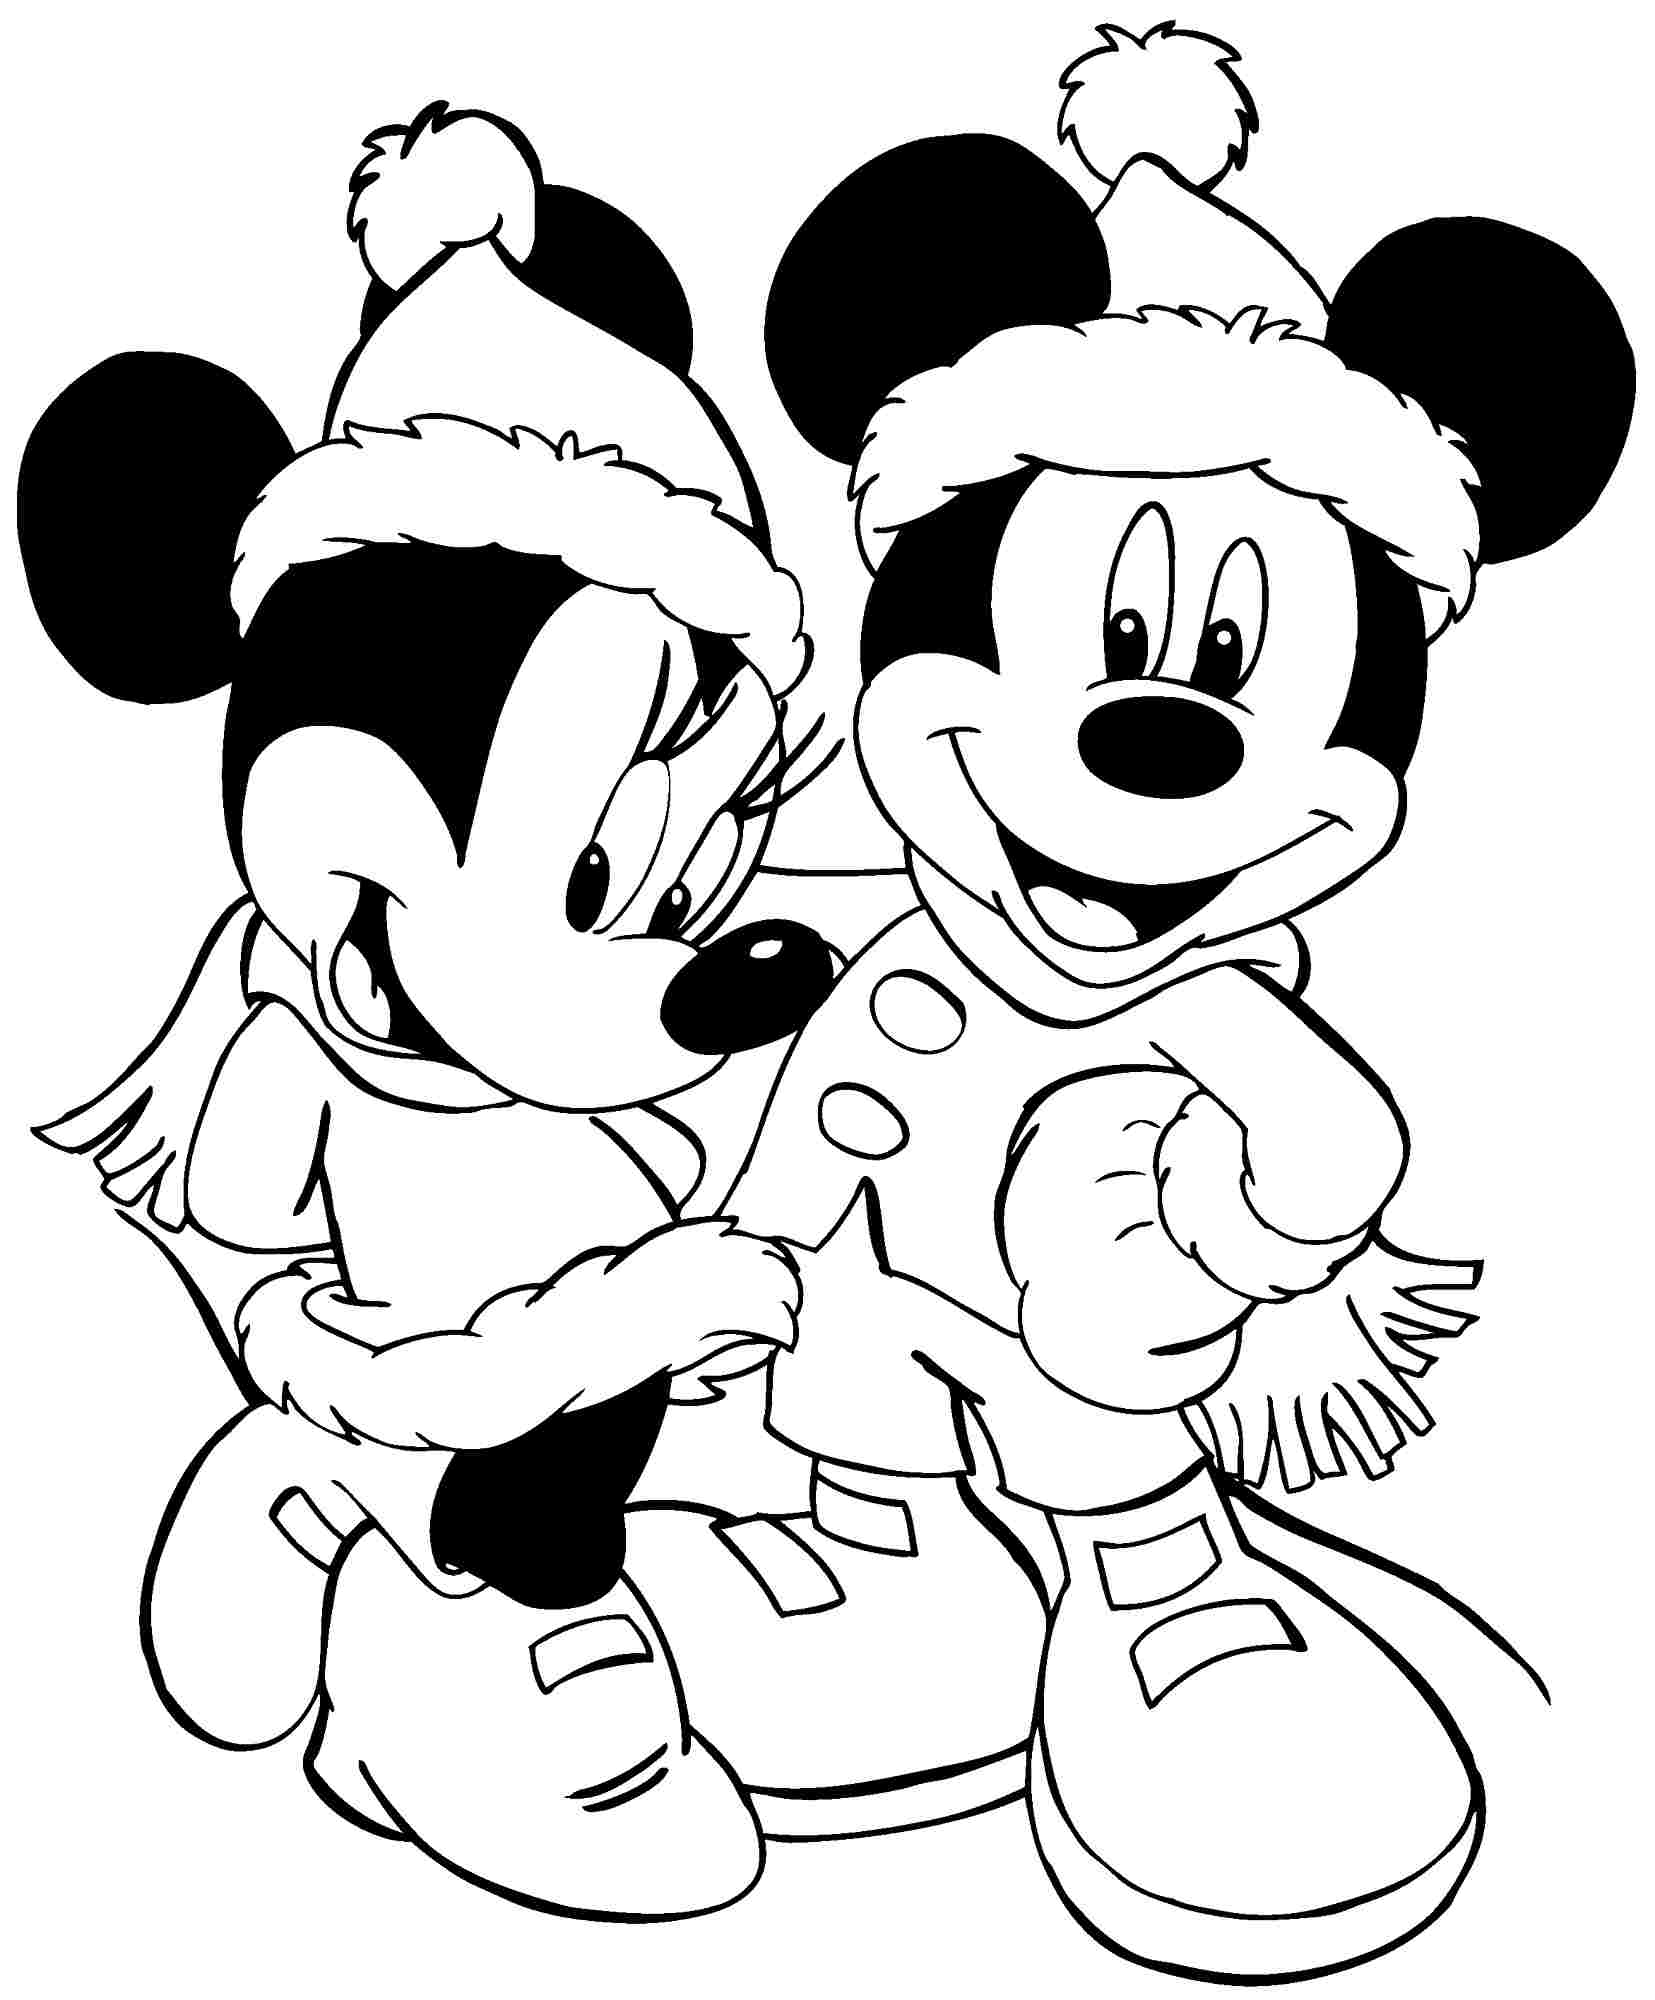 Chuột Mickey và bạn gái trong trang phục rất ấm áp